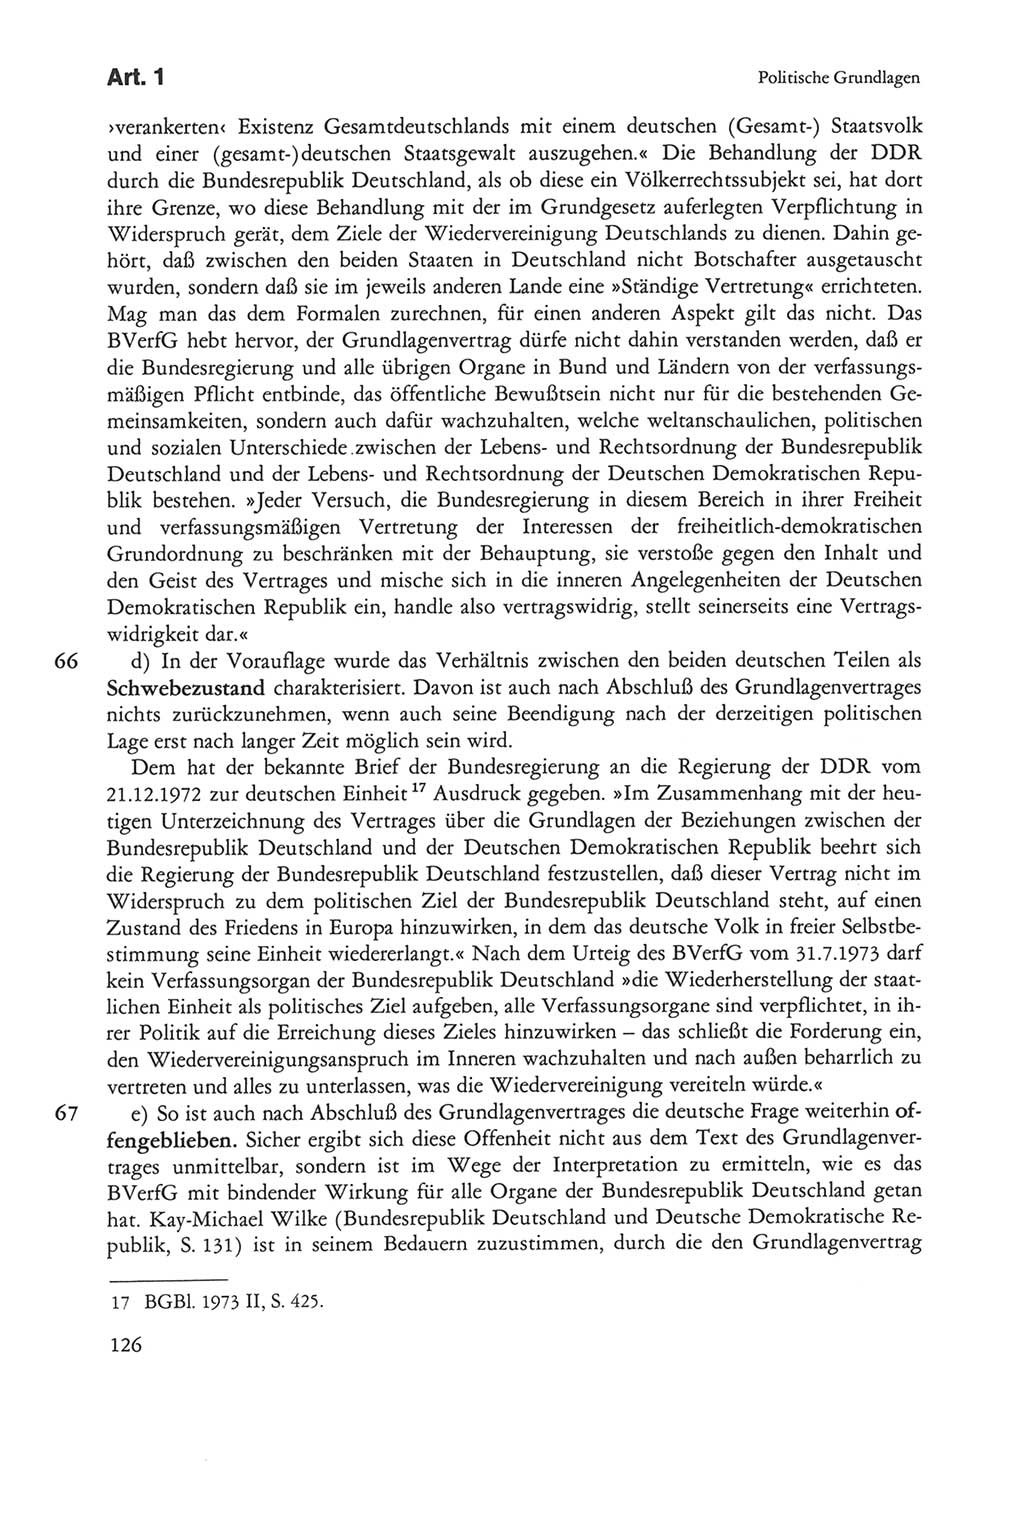 Die sozialistische Verfassung der Deutschen Demokratischen Republik (DDR), Kommentar 1982, Seite 126 (Soz. Verf. DDR Komm. 1982, S. 126)